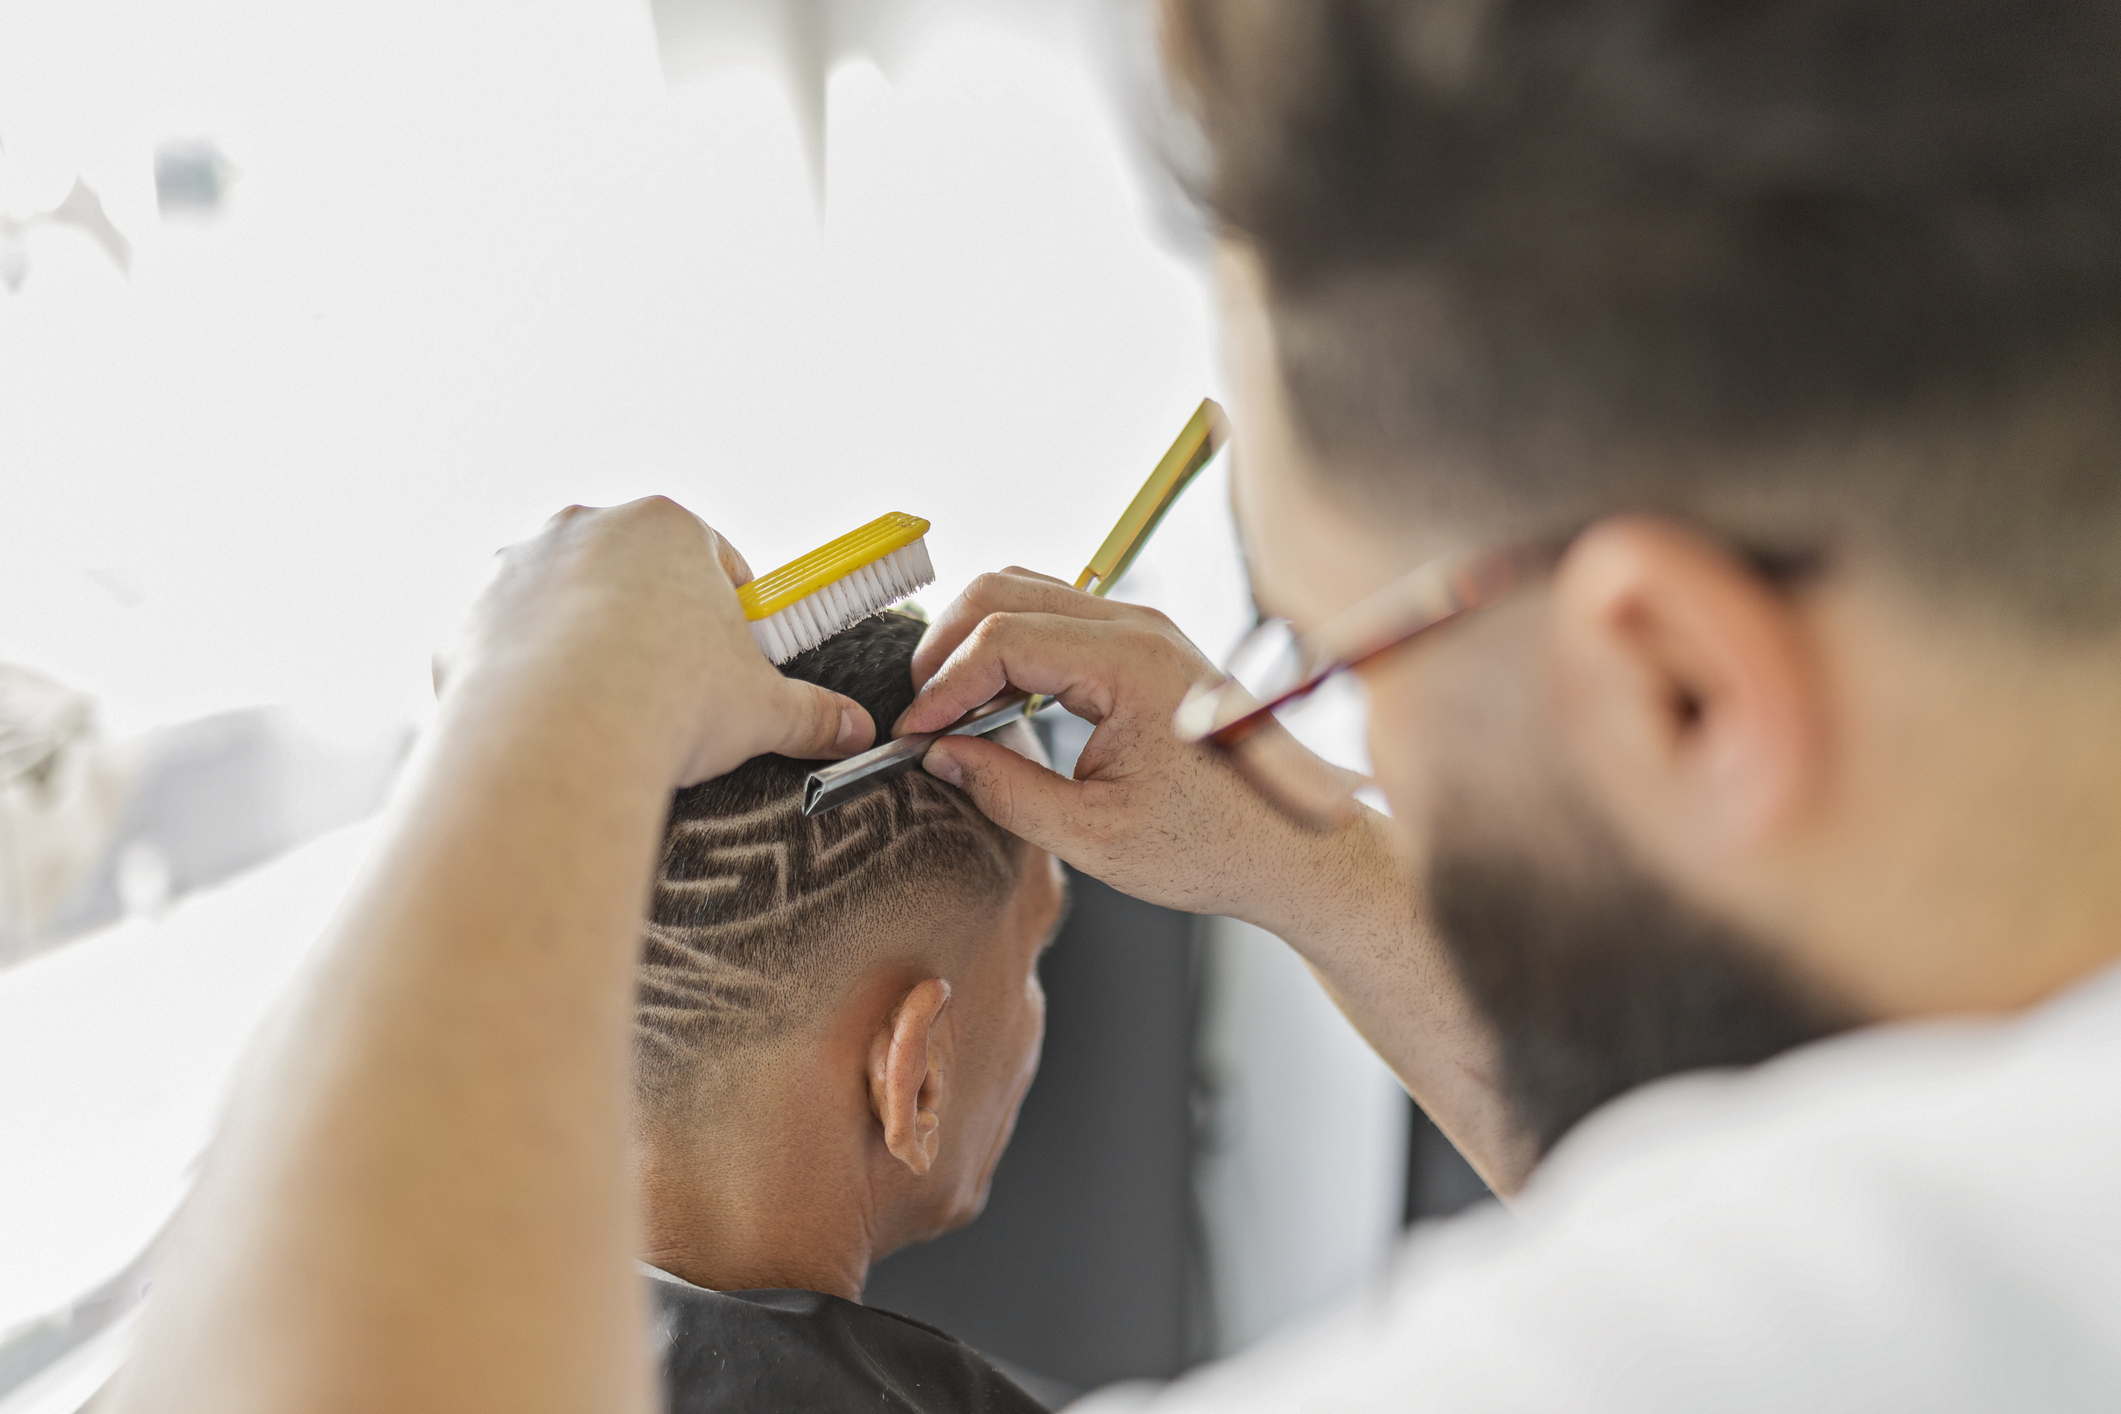 Como están de moda los diseños de corte con rasurados, adolescentes y jóvenes van con más frecuencia a barberías y peluquerías. Podría ser una situación de mayor riesgo de contagio del hongo que causa la tiña capitis/Archivo